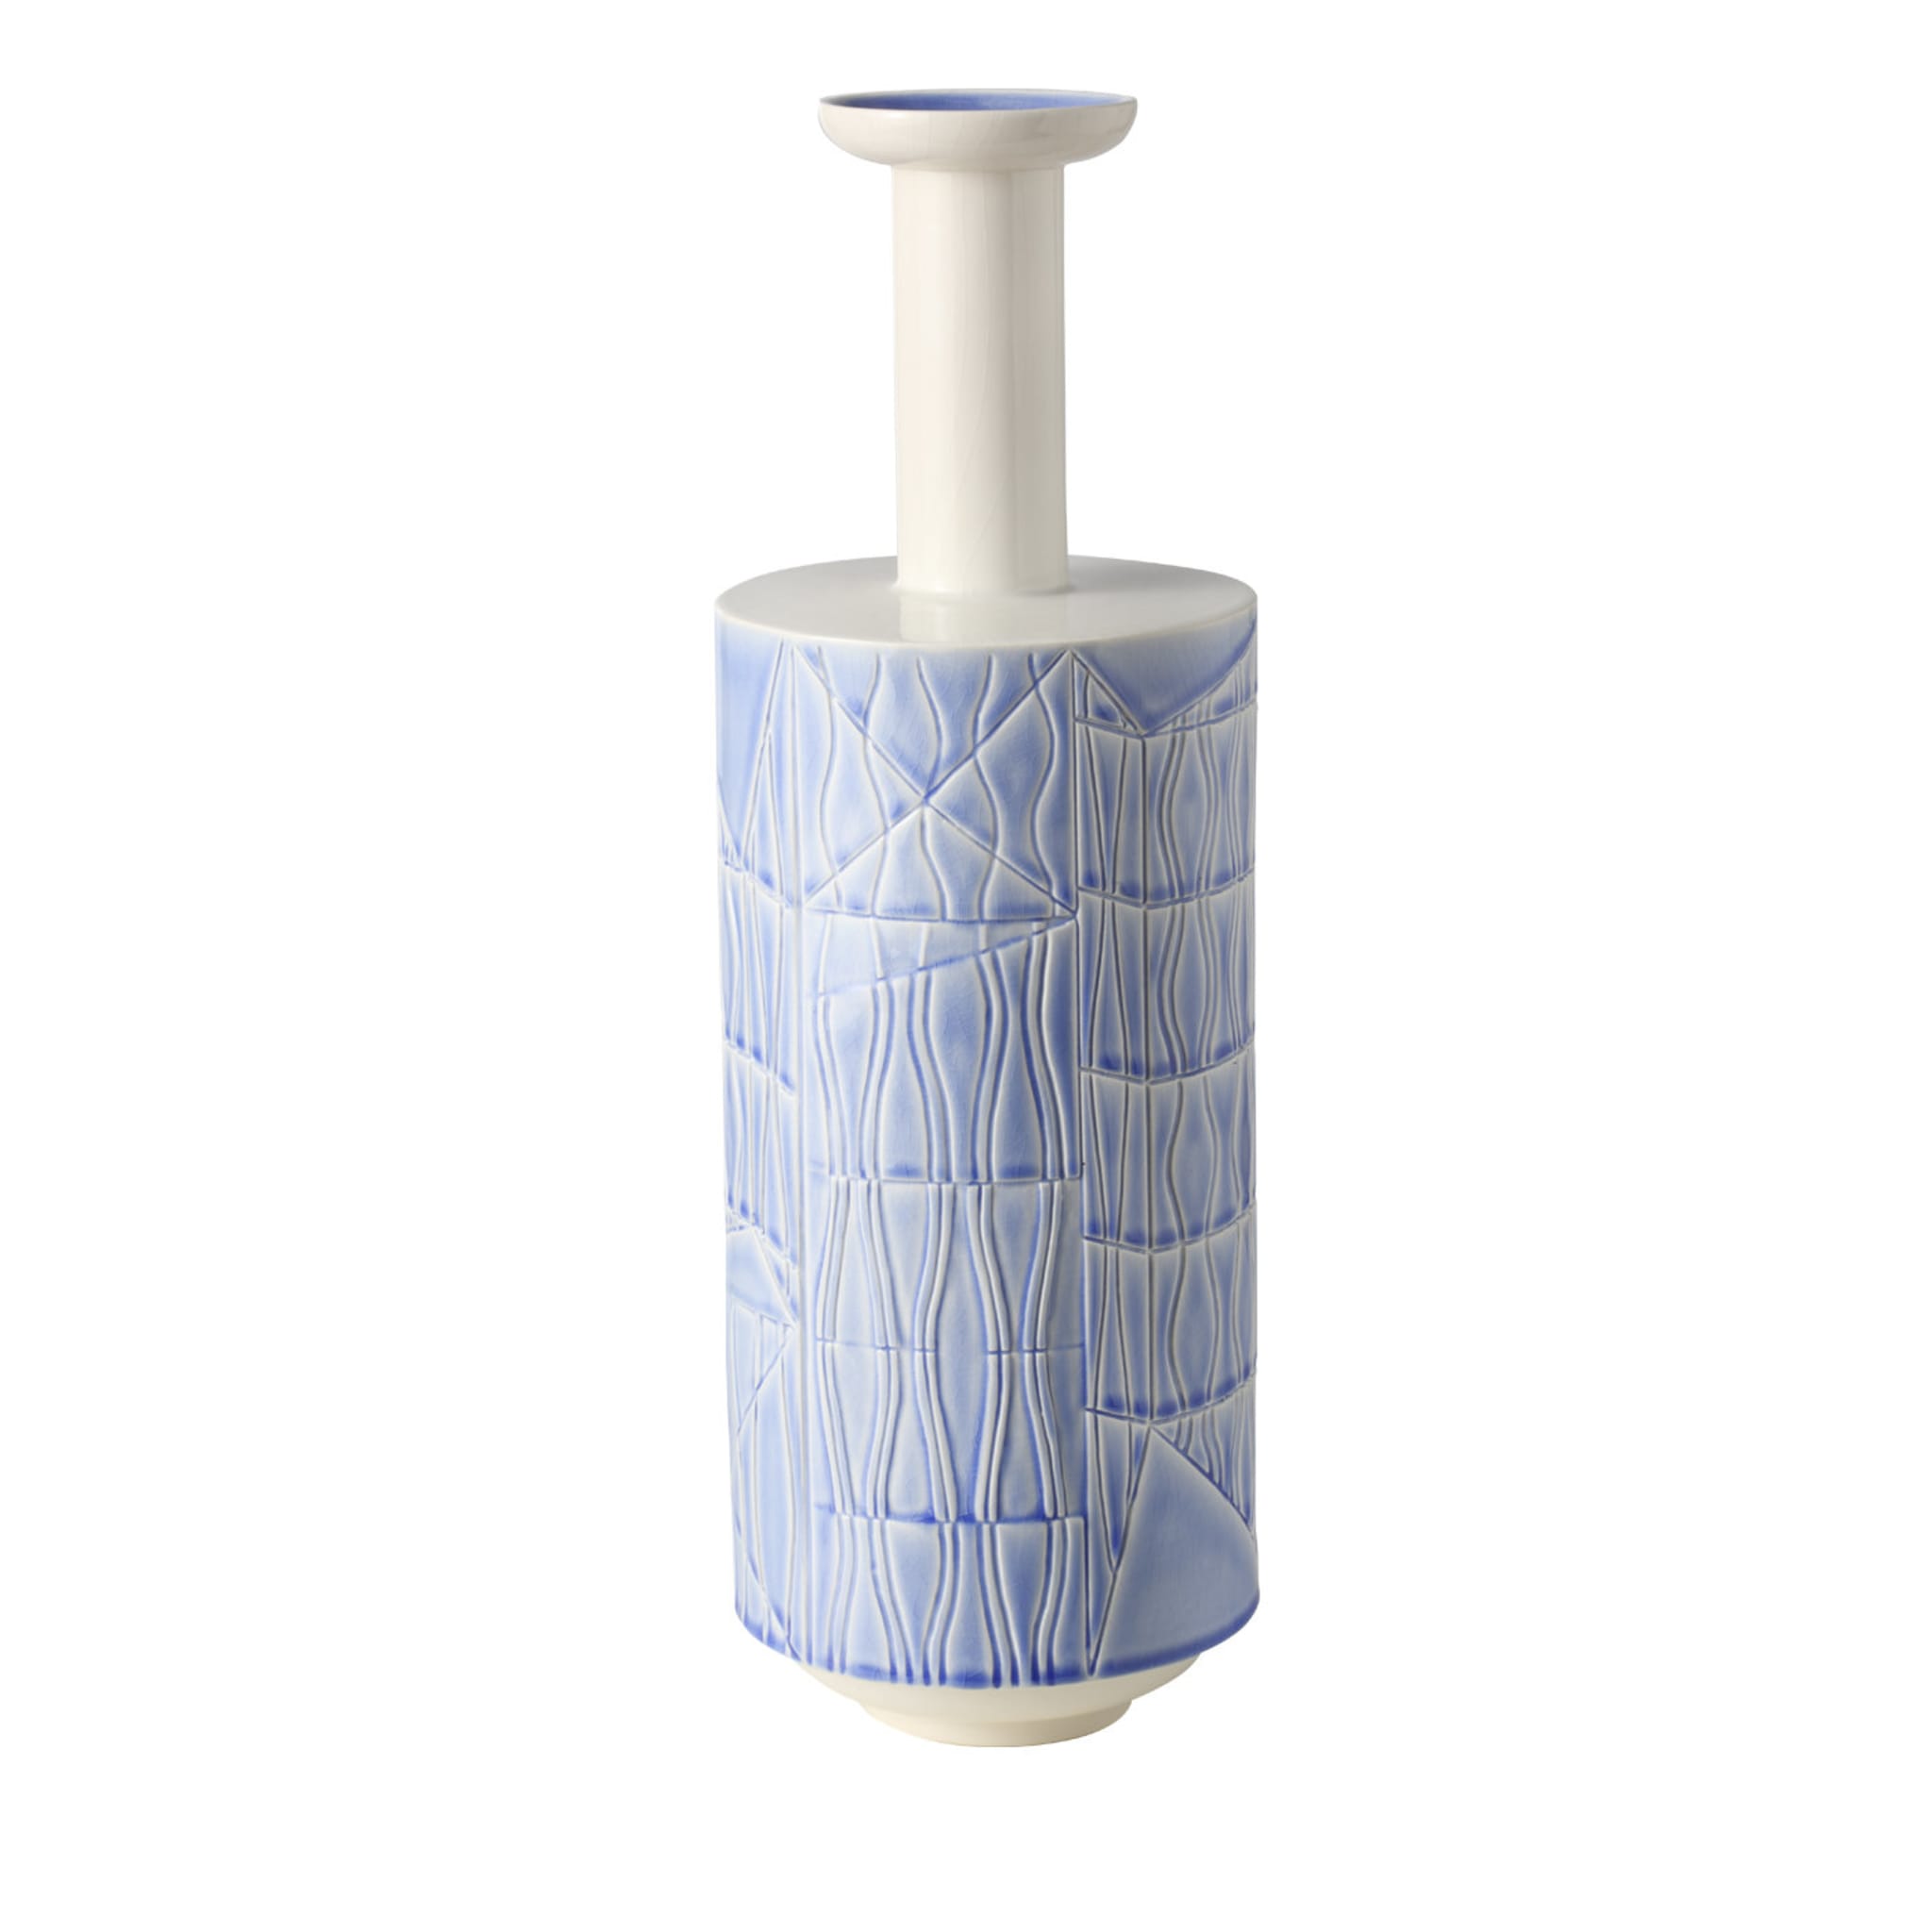 Hohe weiße und blassblaue Vase von Bethan Laura Wood - Hauptansicht